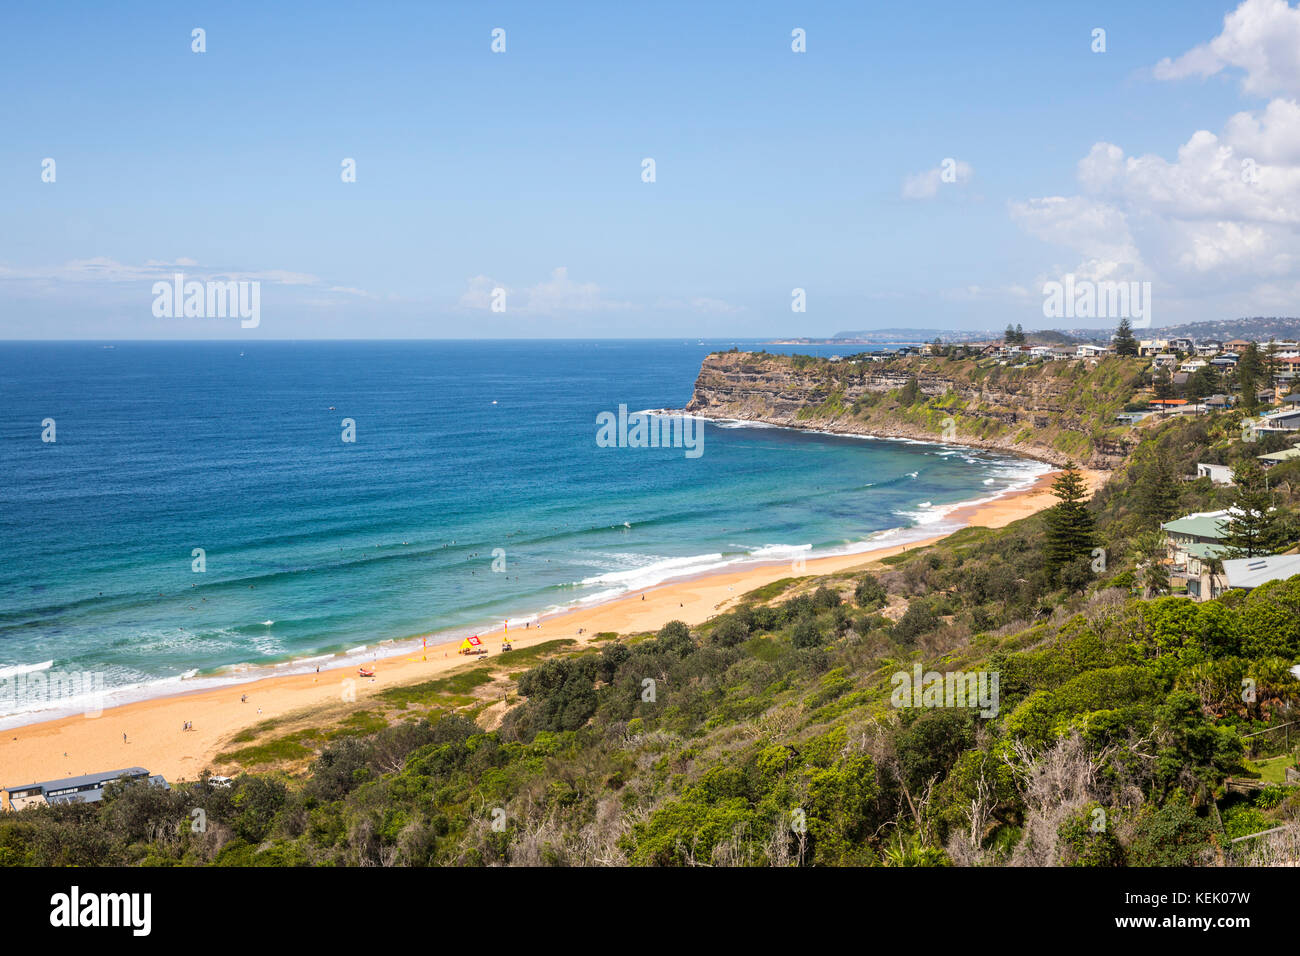 Vista de la playa Bungan en Newport, una de las playas del norte de Sydney, New South Wales, Australia Foto de stock